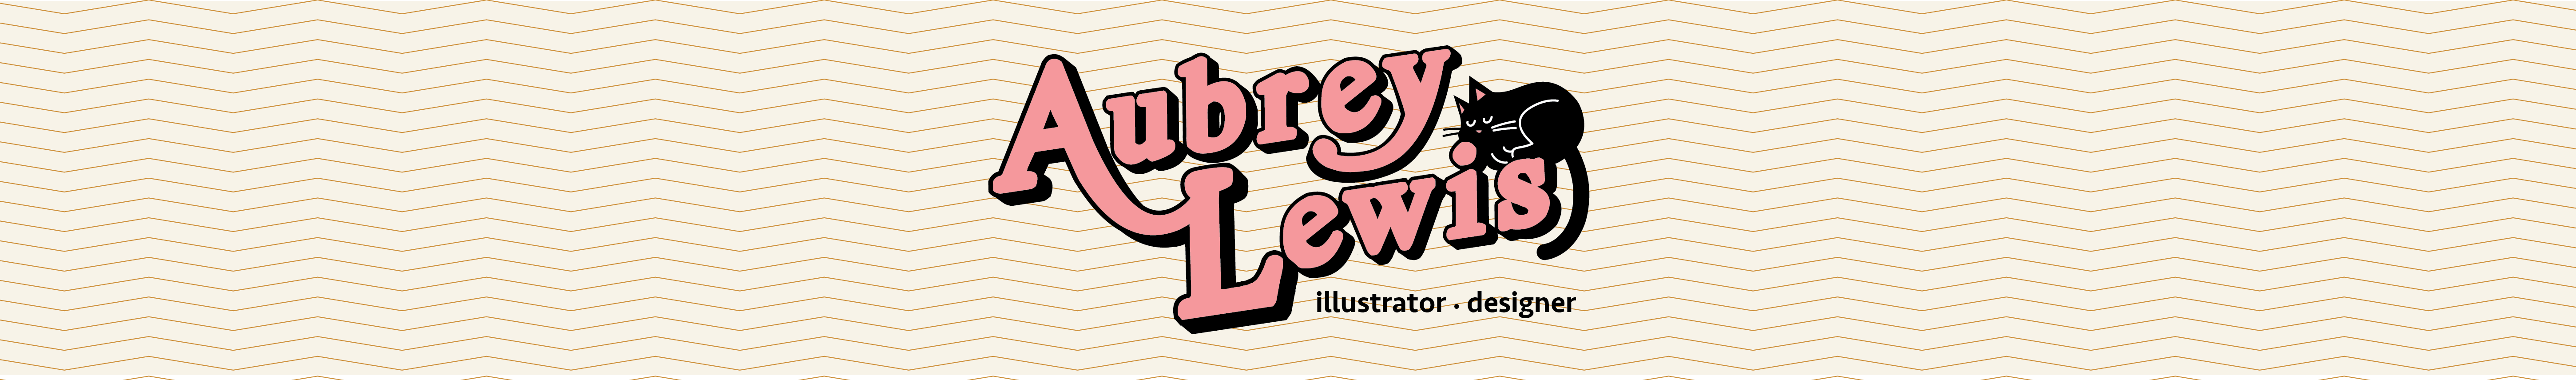 Aubrey Lewis's profile banner